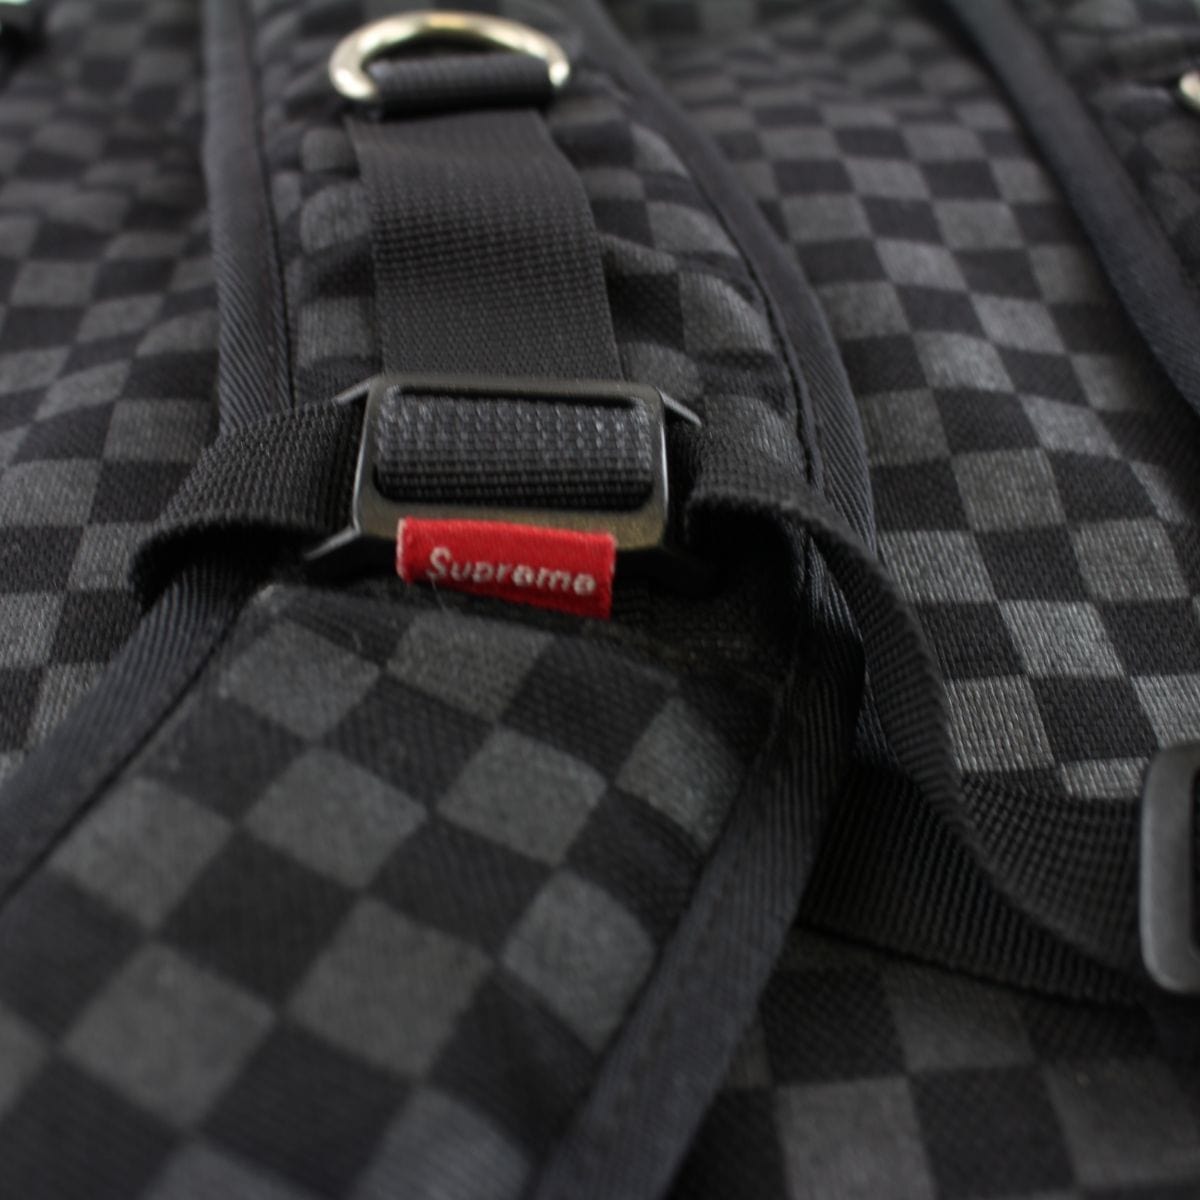 Supreme Checkered Backpack Black - SaruGeneral